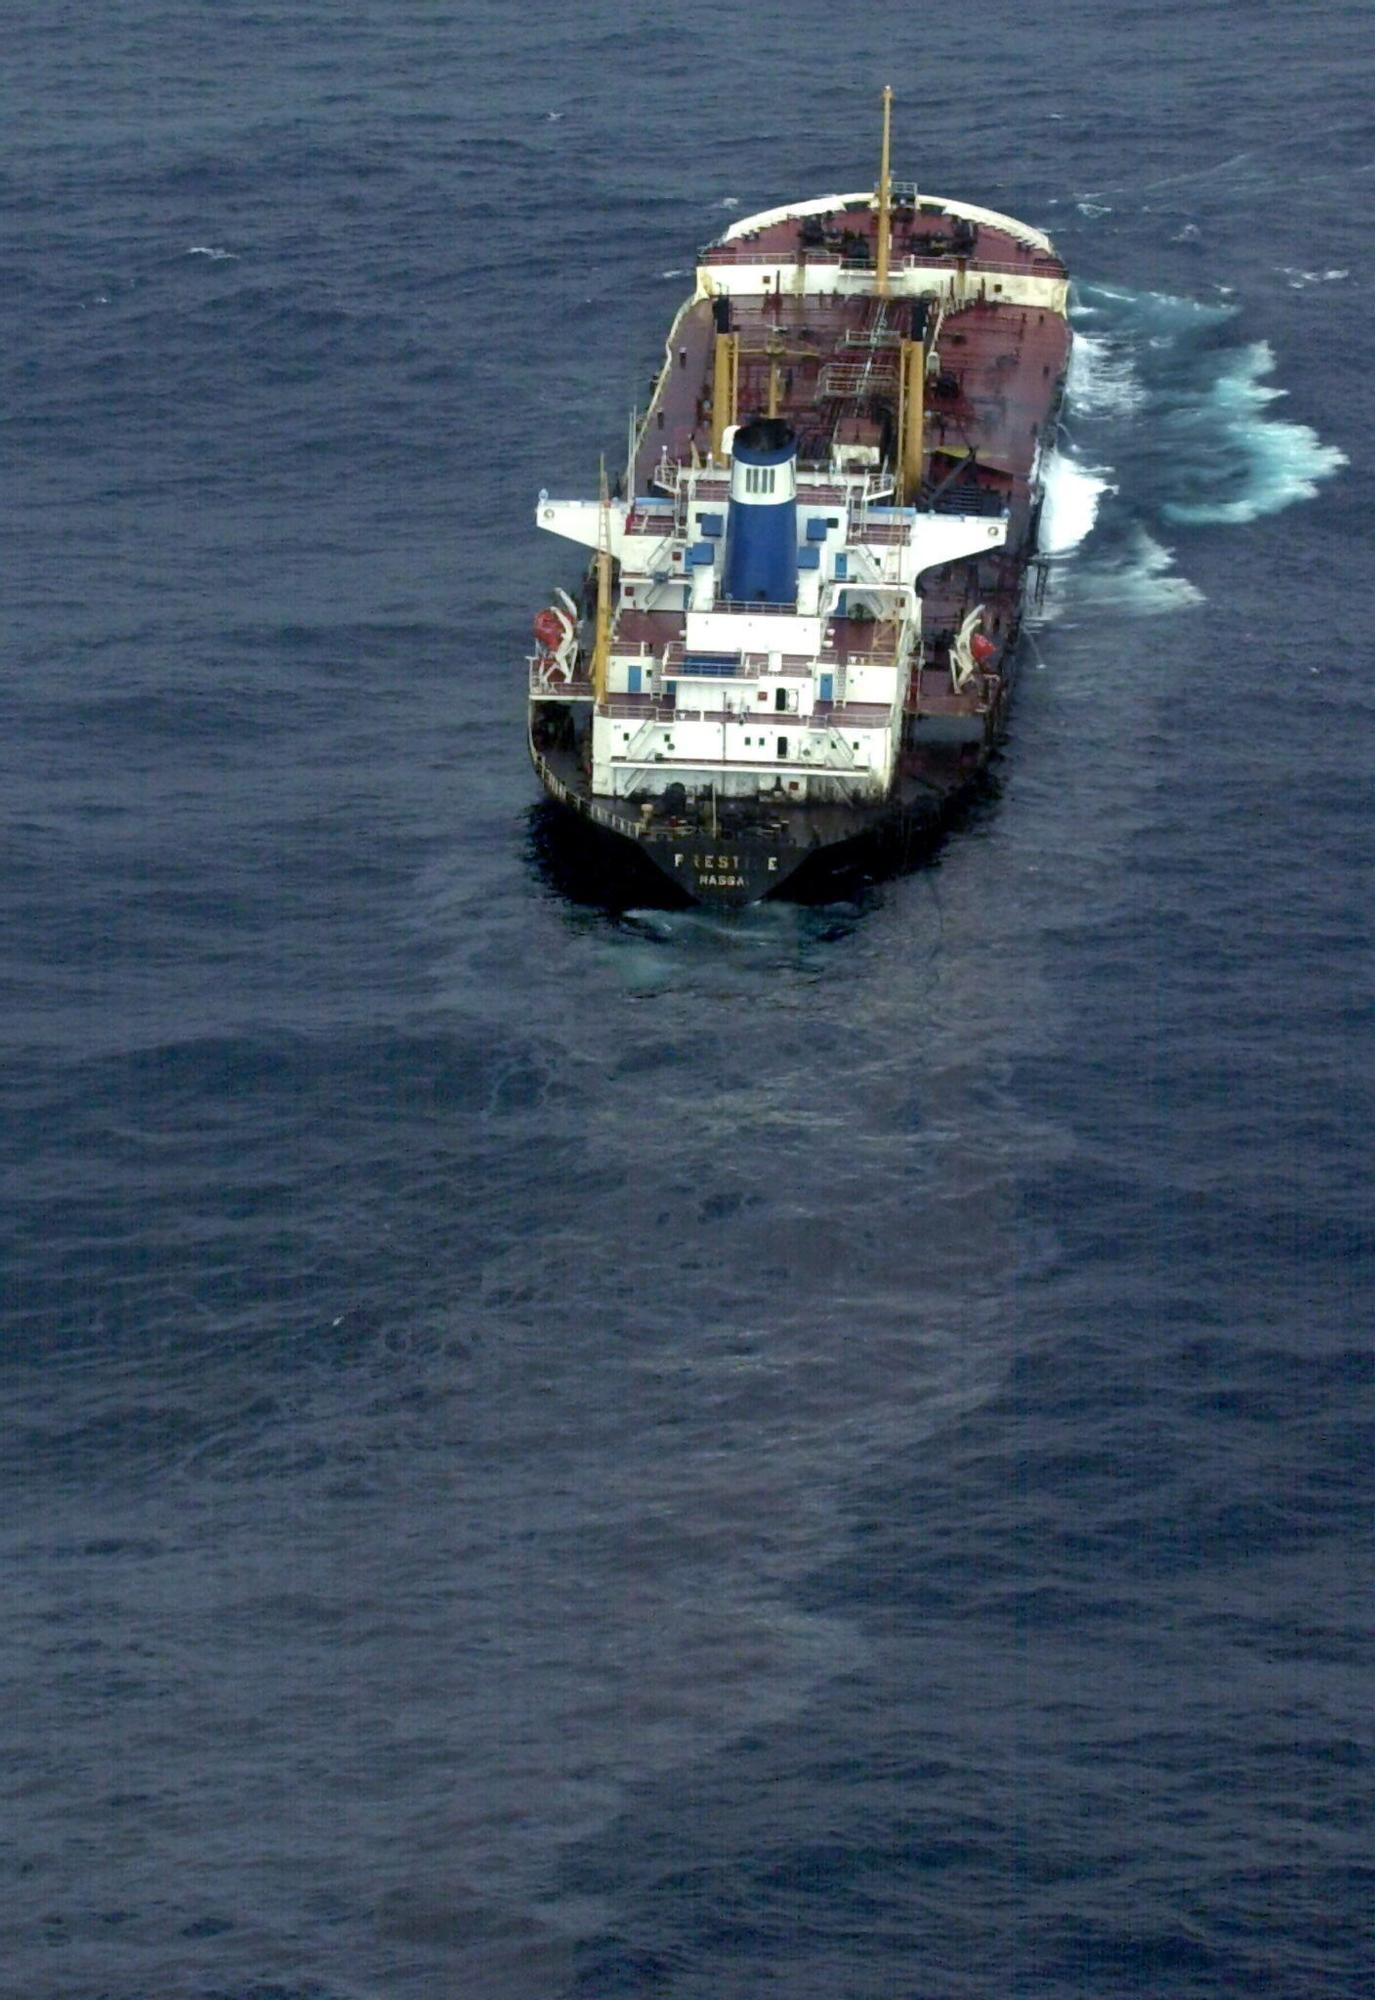 El petrolero Prestige cuando estaba siendo remolcado a escasas millas de la costa gallega antes de hunidrse en 2002 Lavandeira Jr (6).jpg